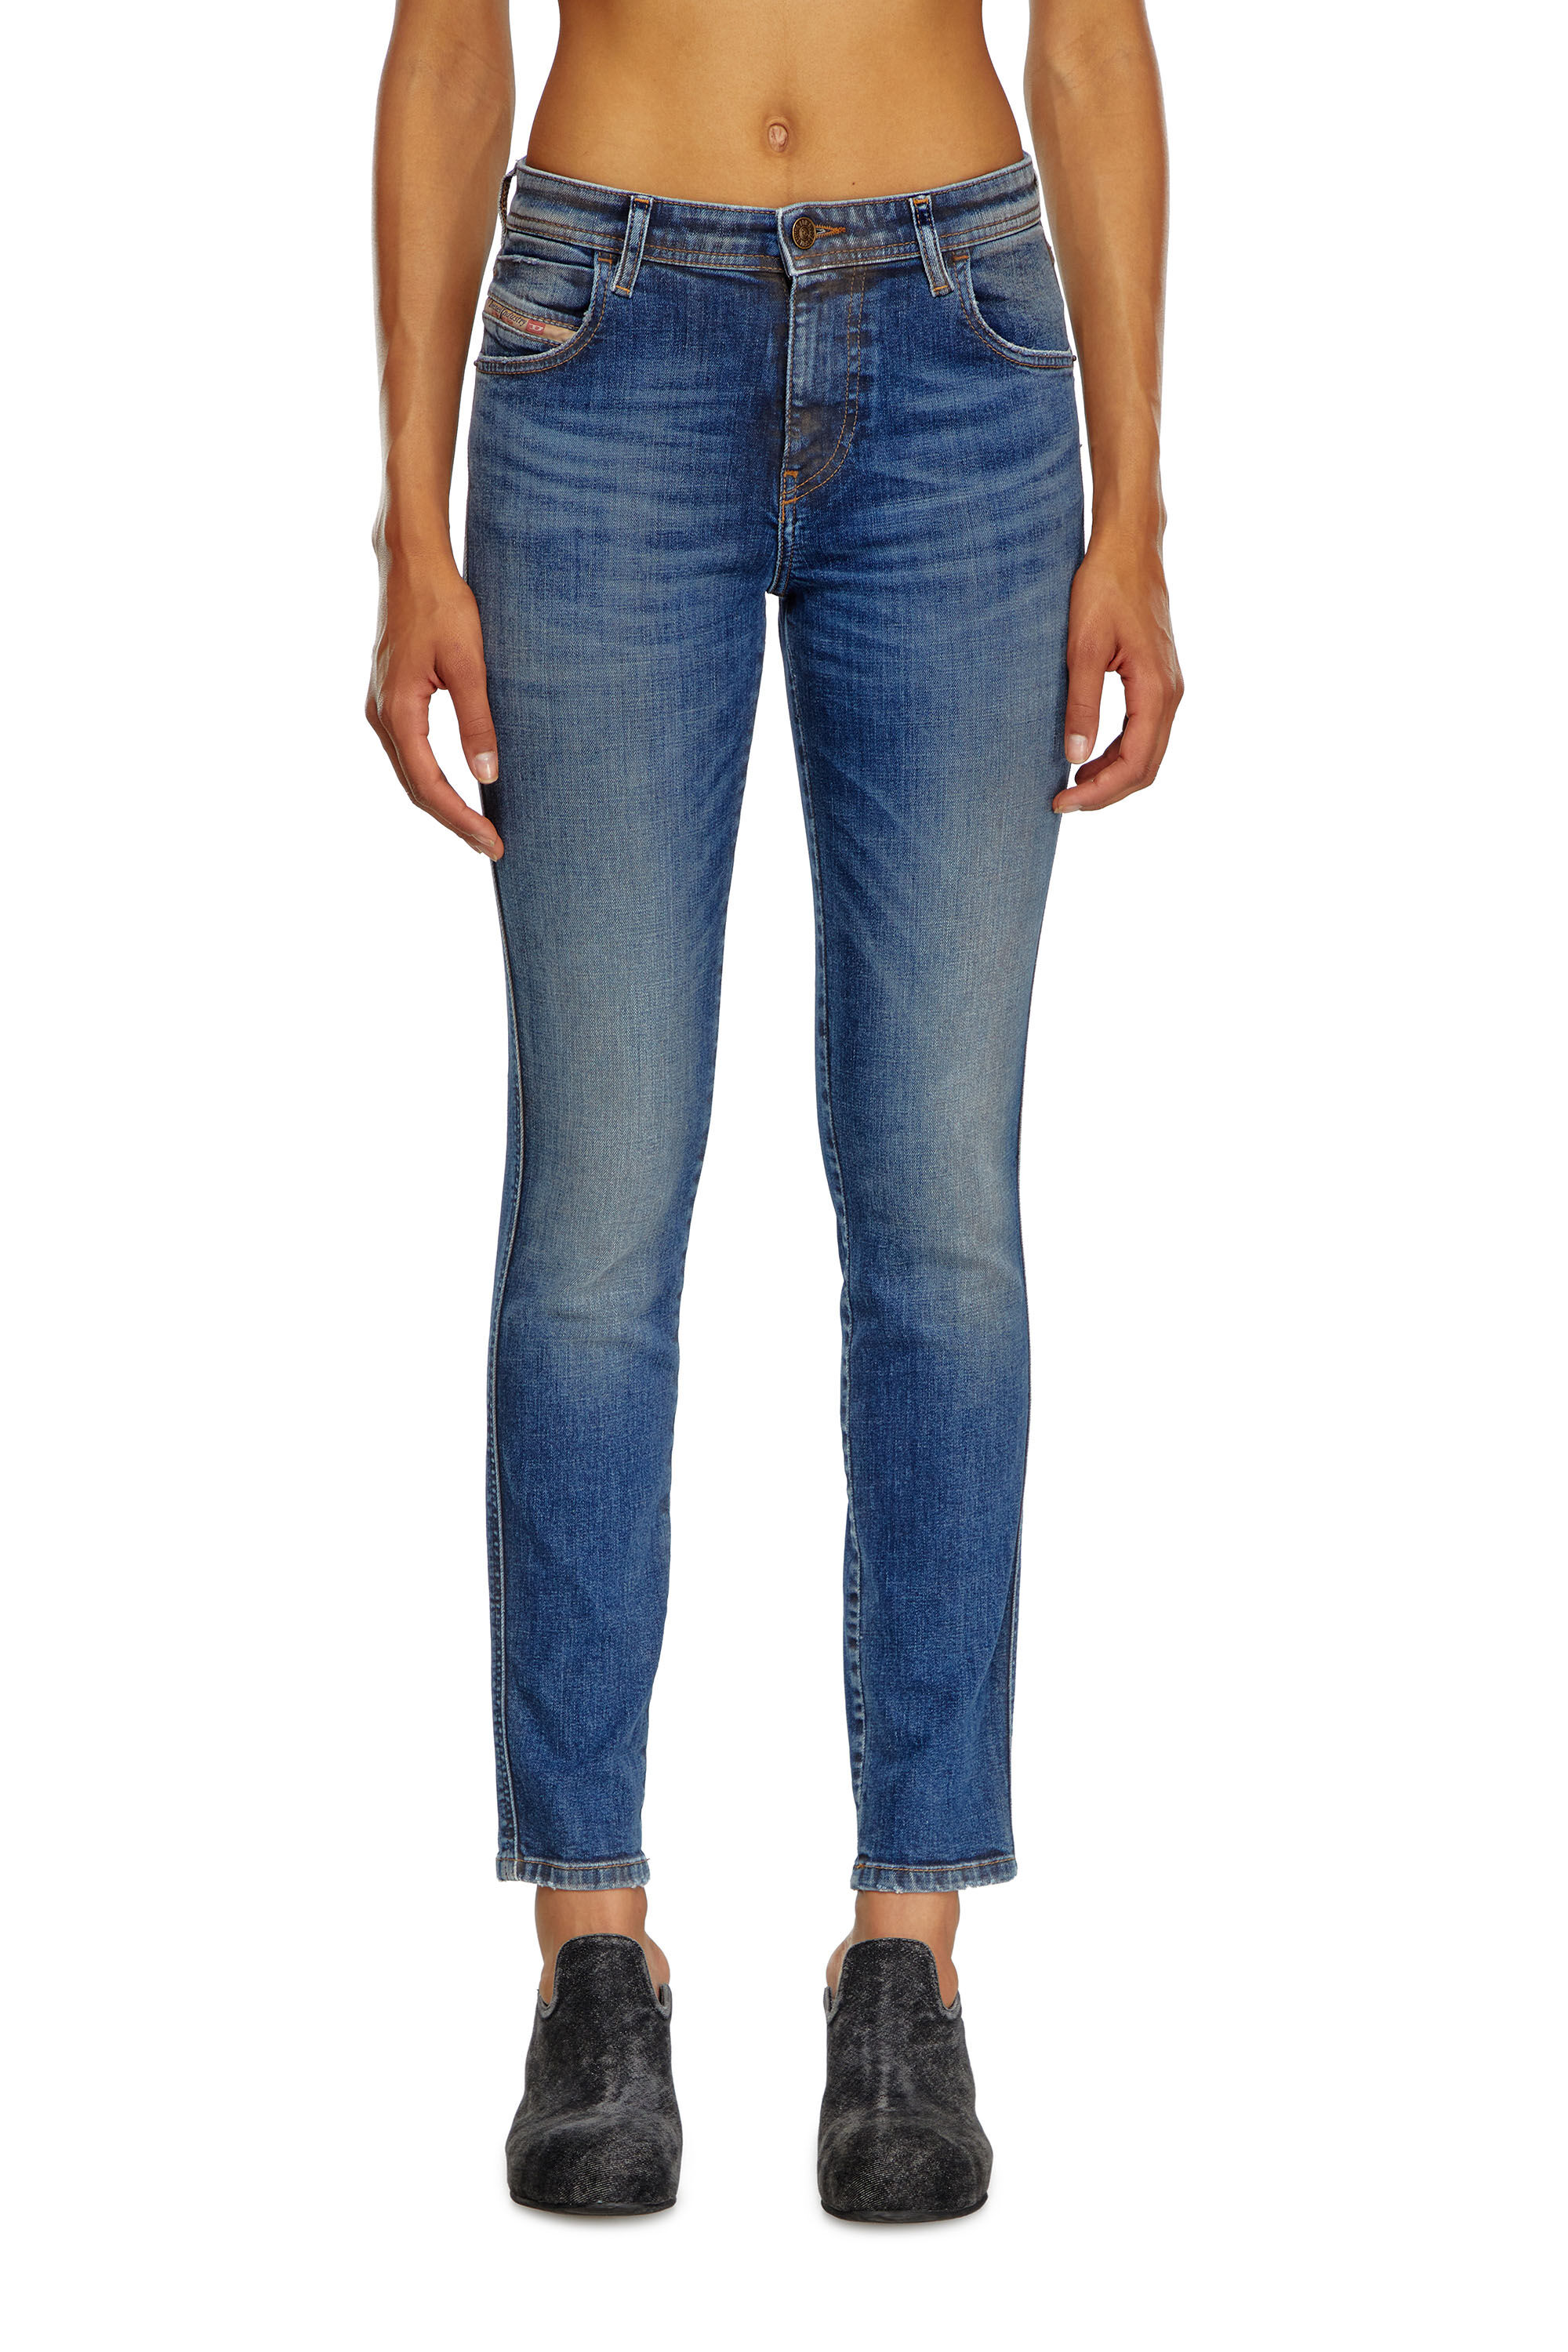 Diesel - Skinny Jeans 2015 Babhila 09J32, Mujer Skinny Jeans - 2015 Babhila in Azul marino - Image 3